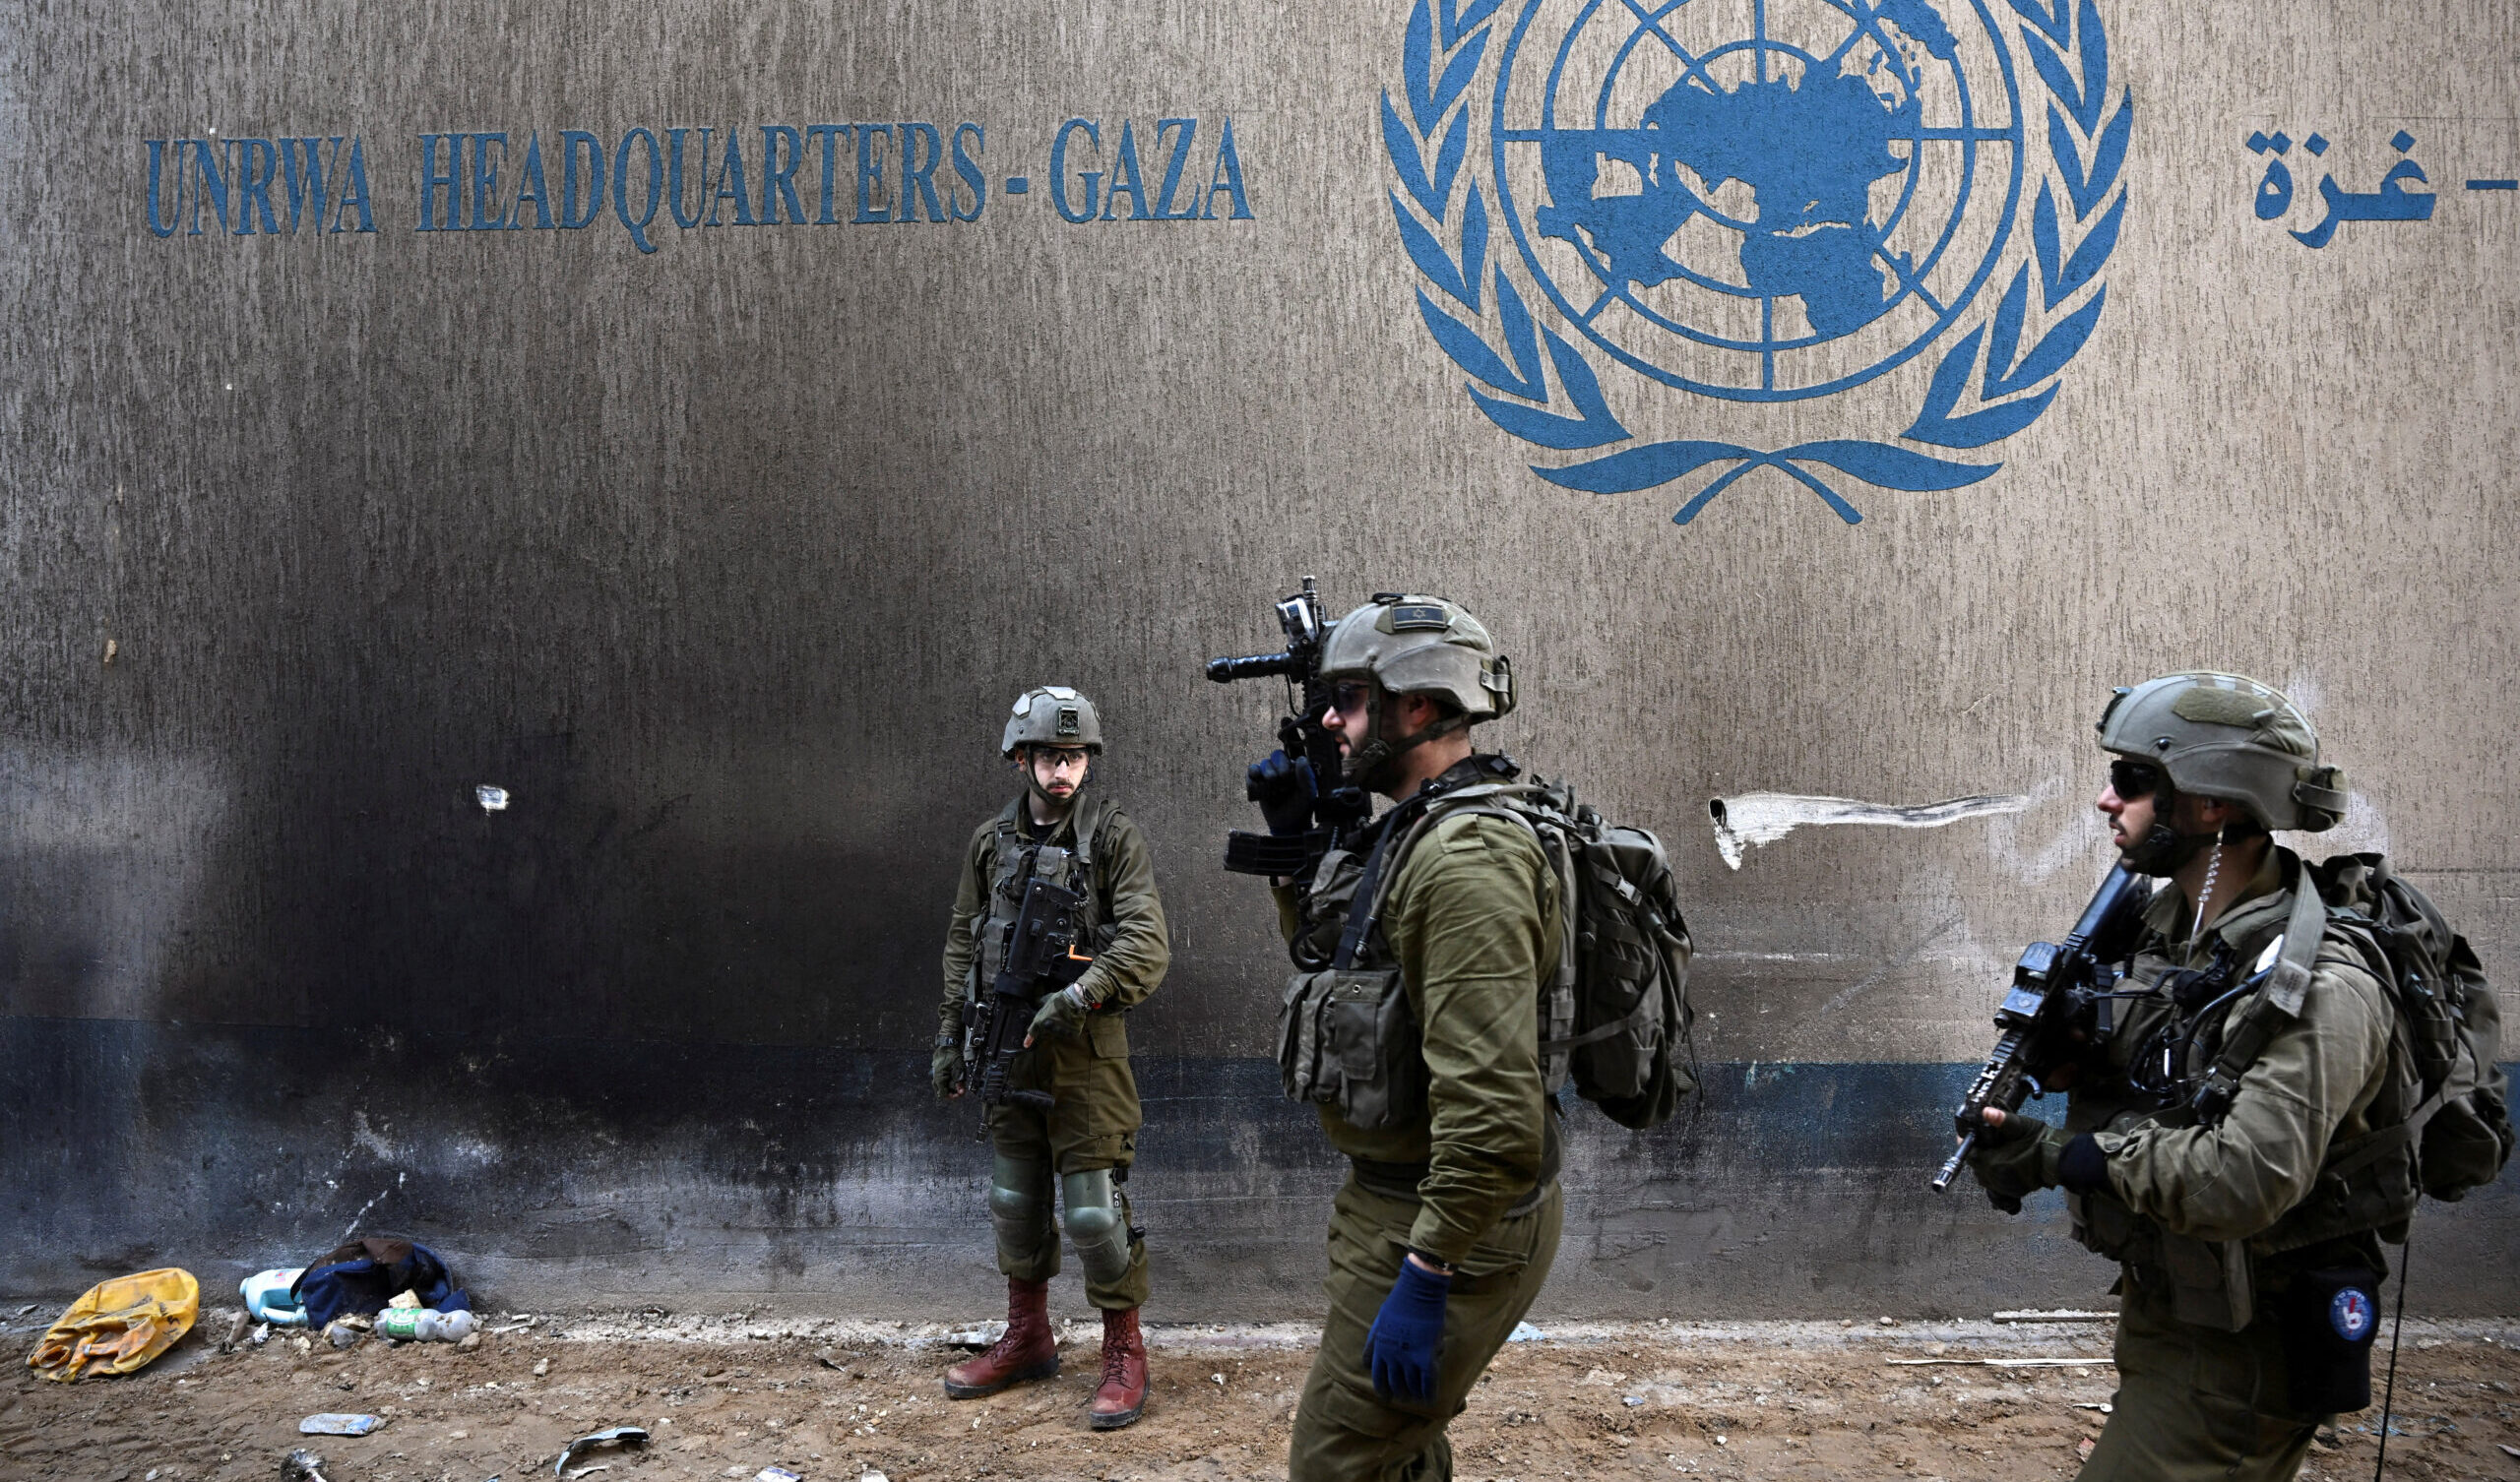 L'appello di Haaretz: "Stop alla guerra, Gaza rischia di diventare una nuova Somalia"